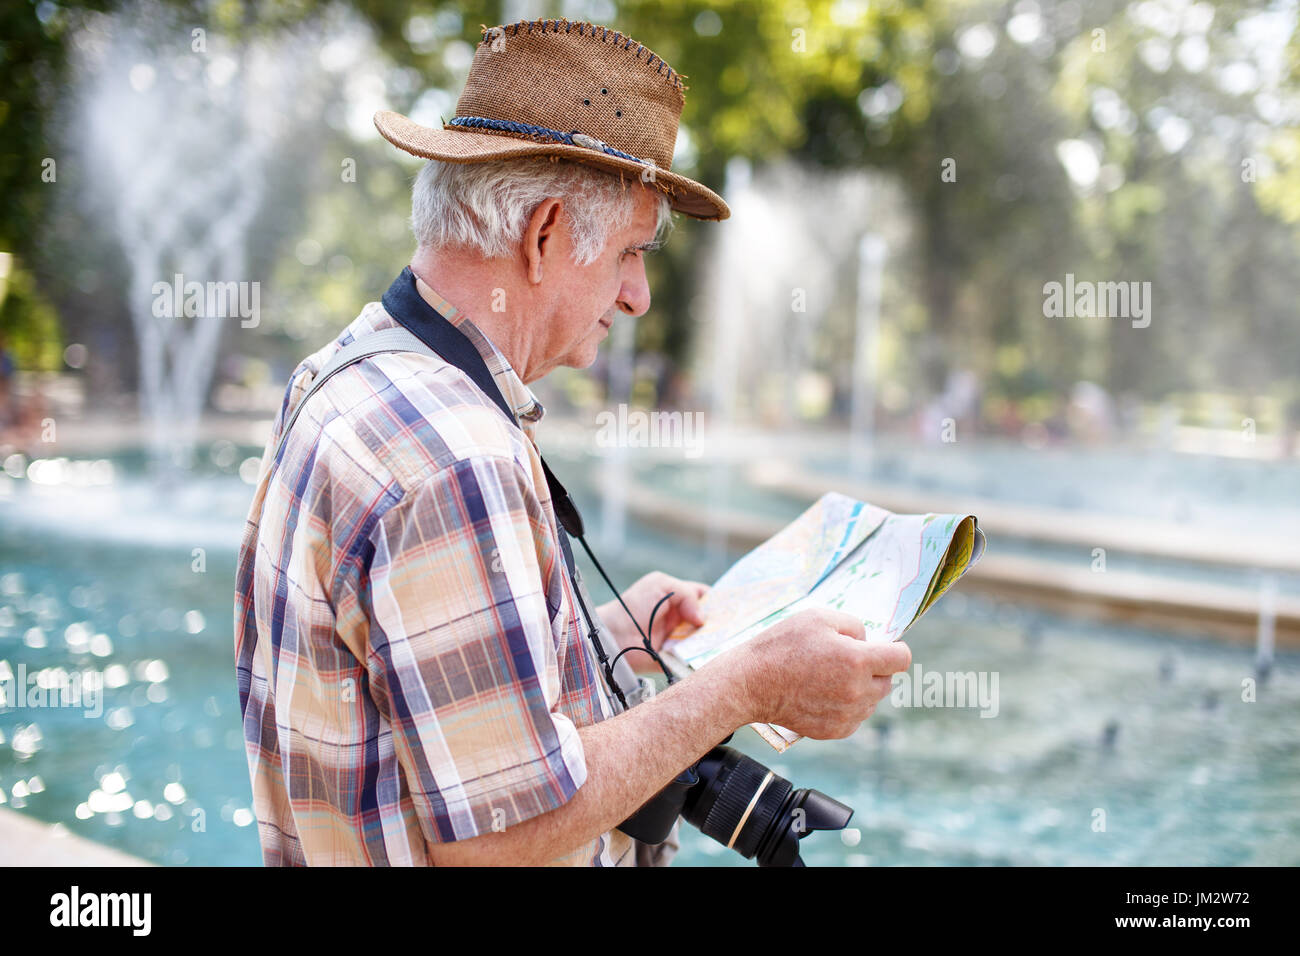 Tourisme dans la région de hat pensionné recherche de destination sur la carte en parc avec des fontaines Banque D'Images